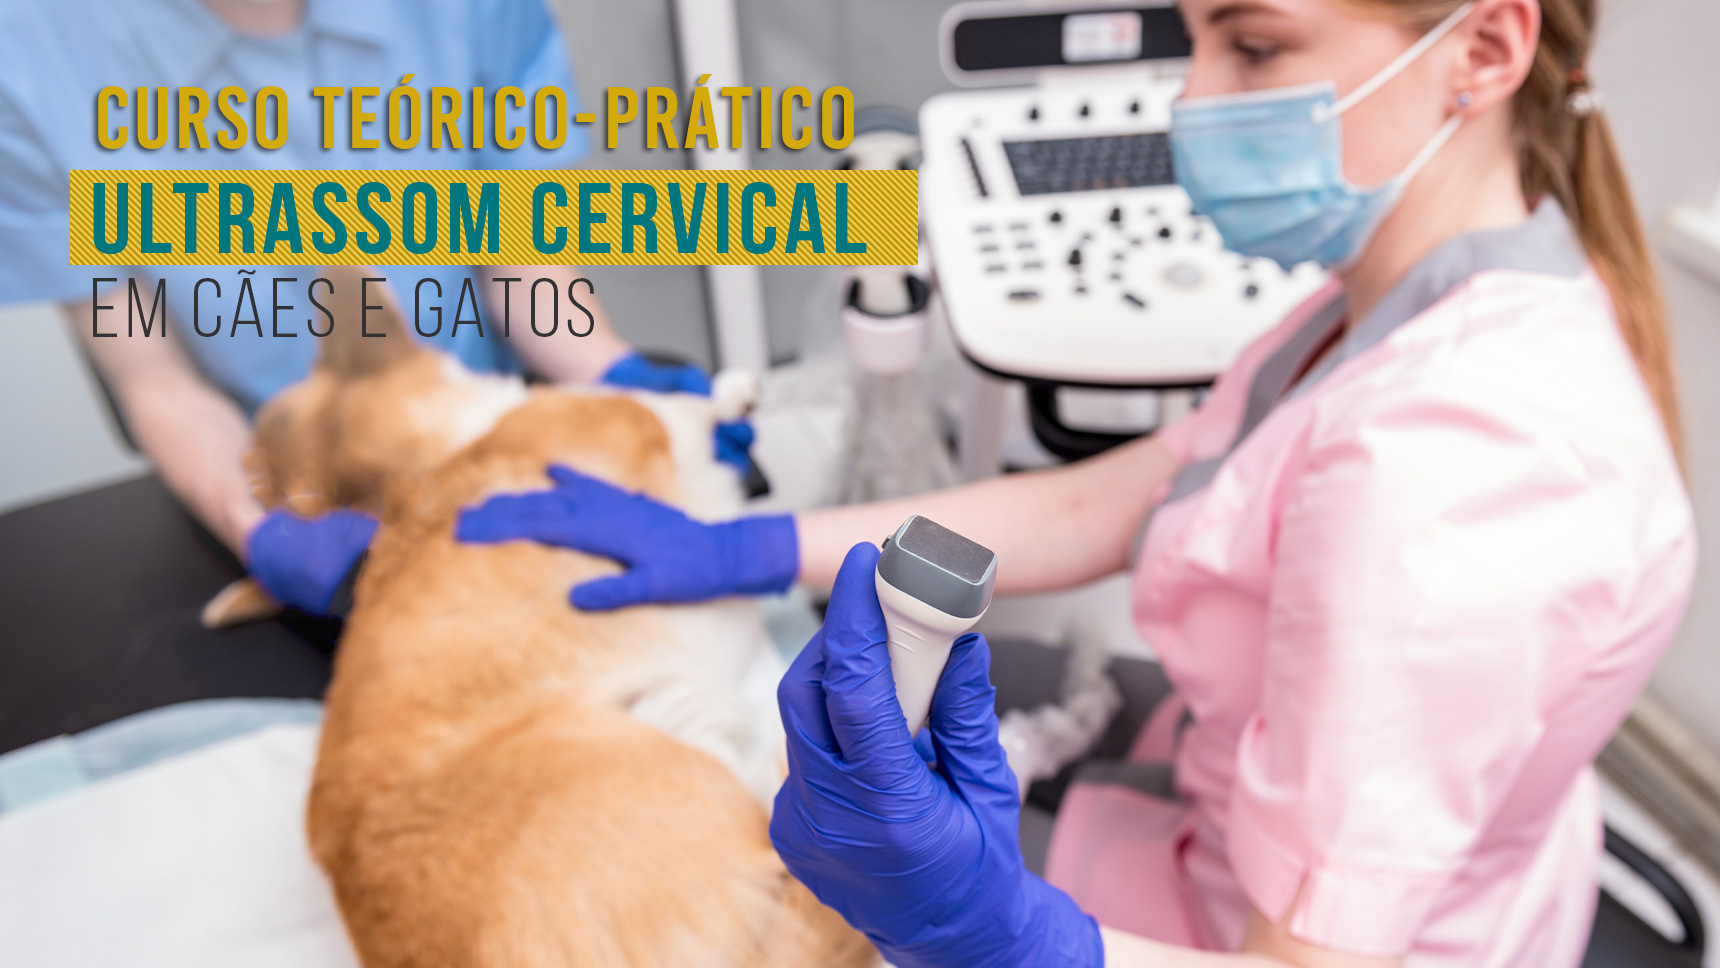 Curso Teórico-Prático de Ultrassom Cervical em Cães e Gatos IEP Ranvier